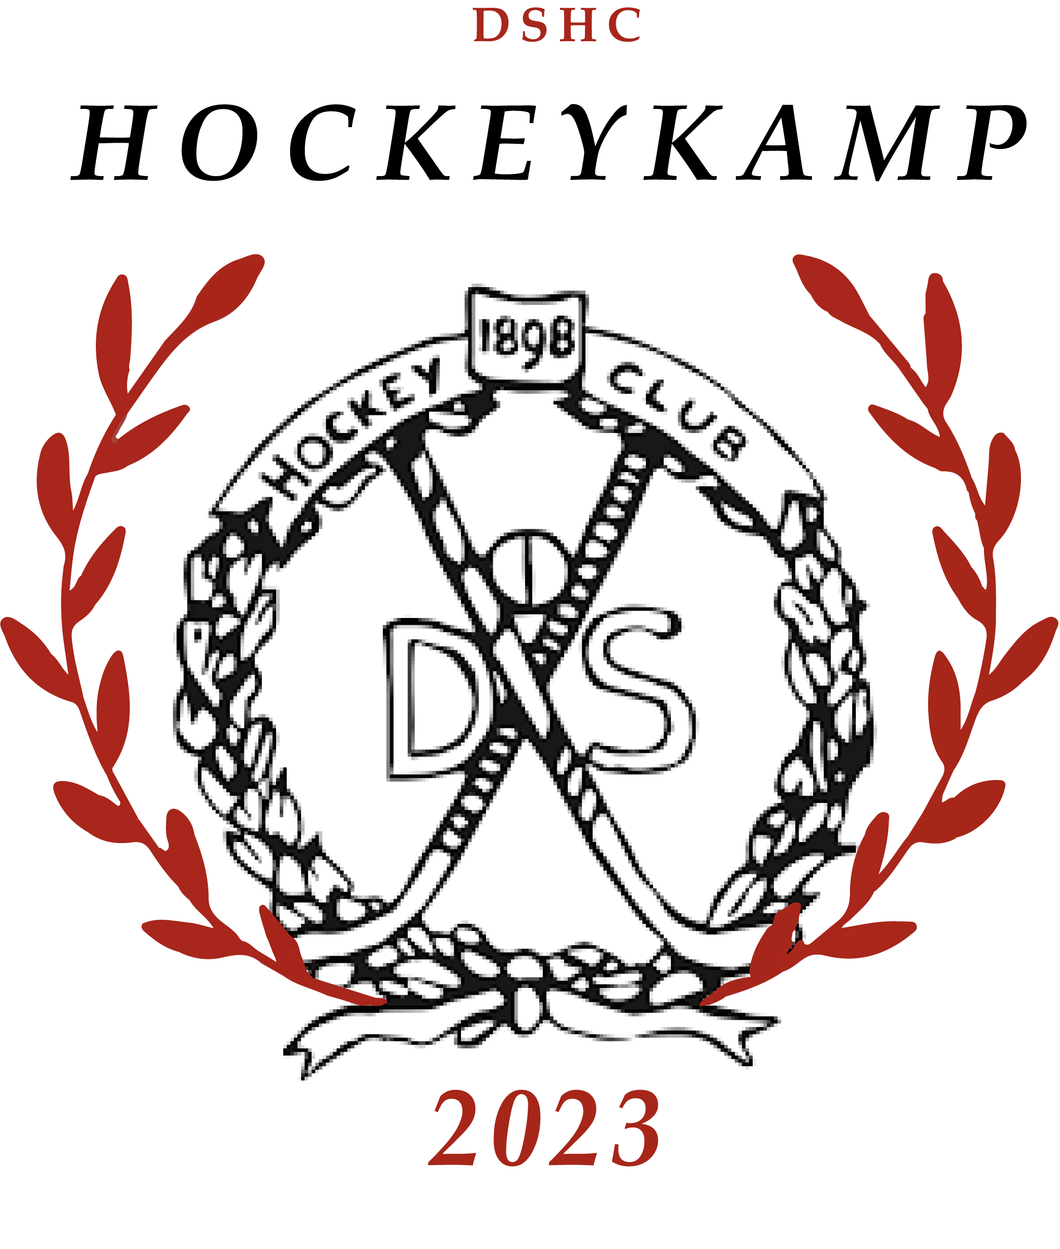 Hockeykamp DSHC 2023